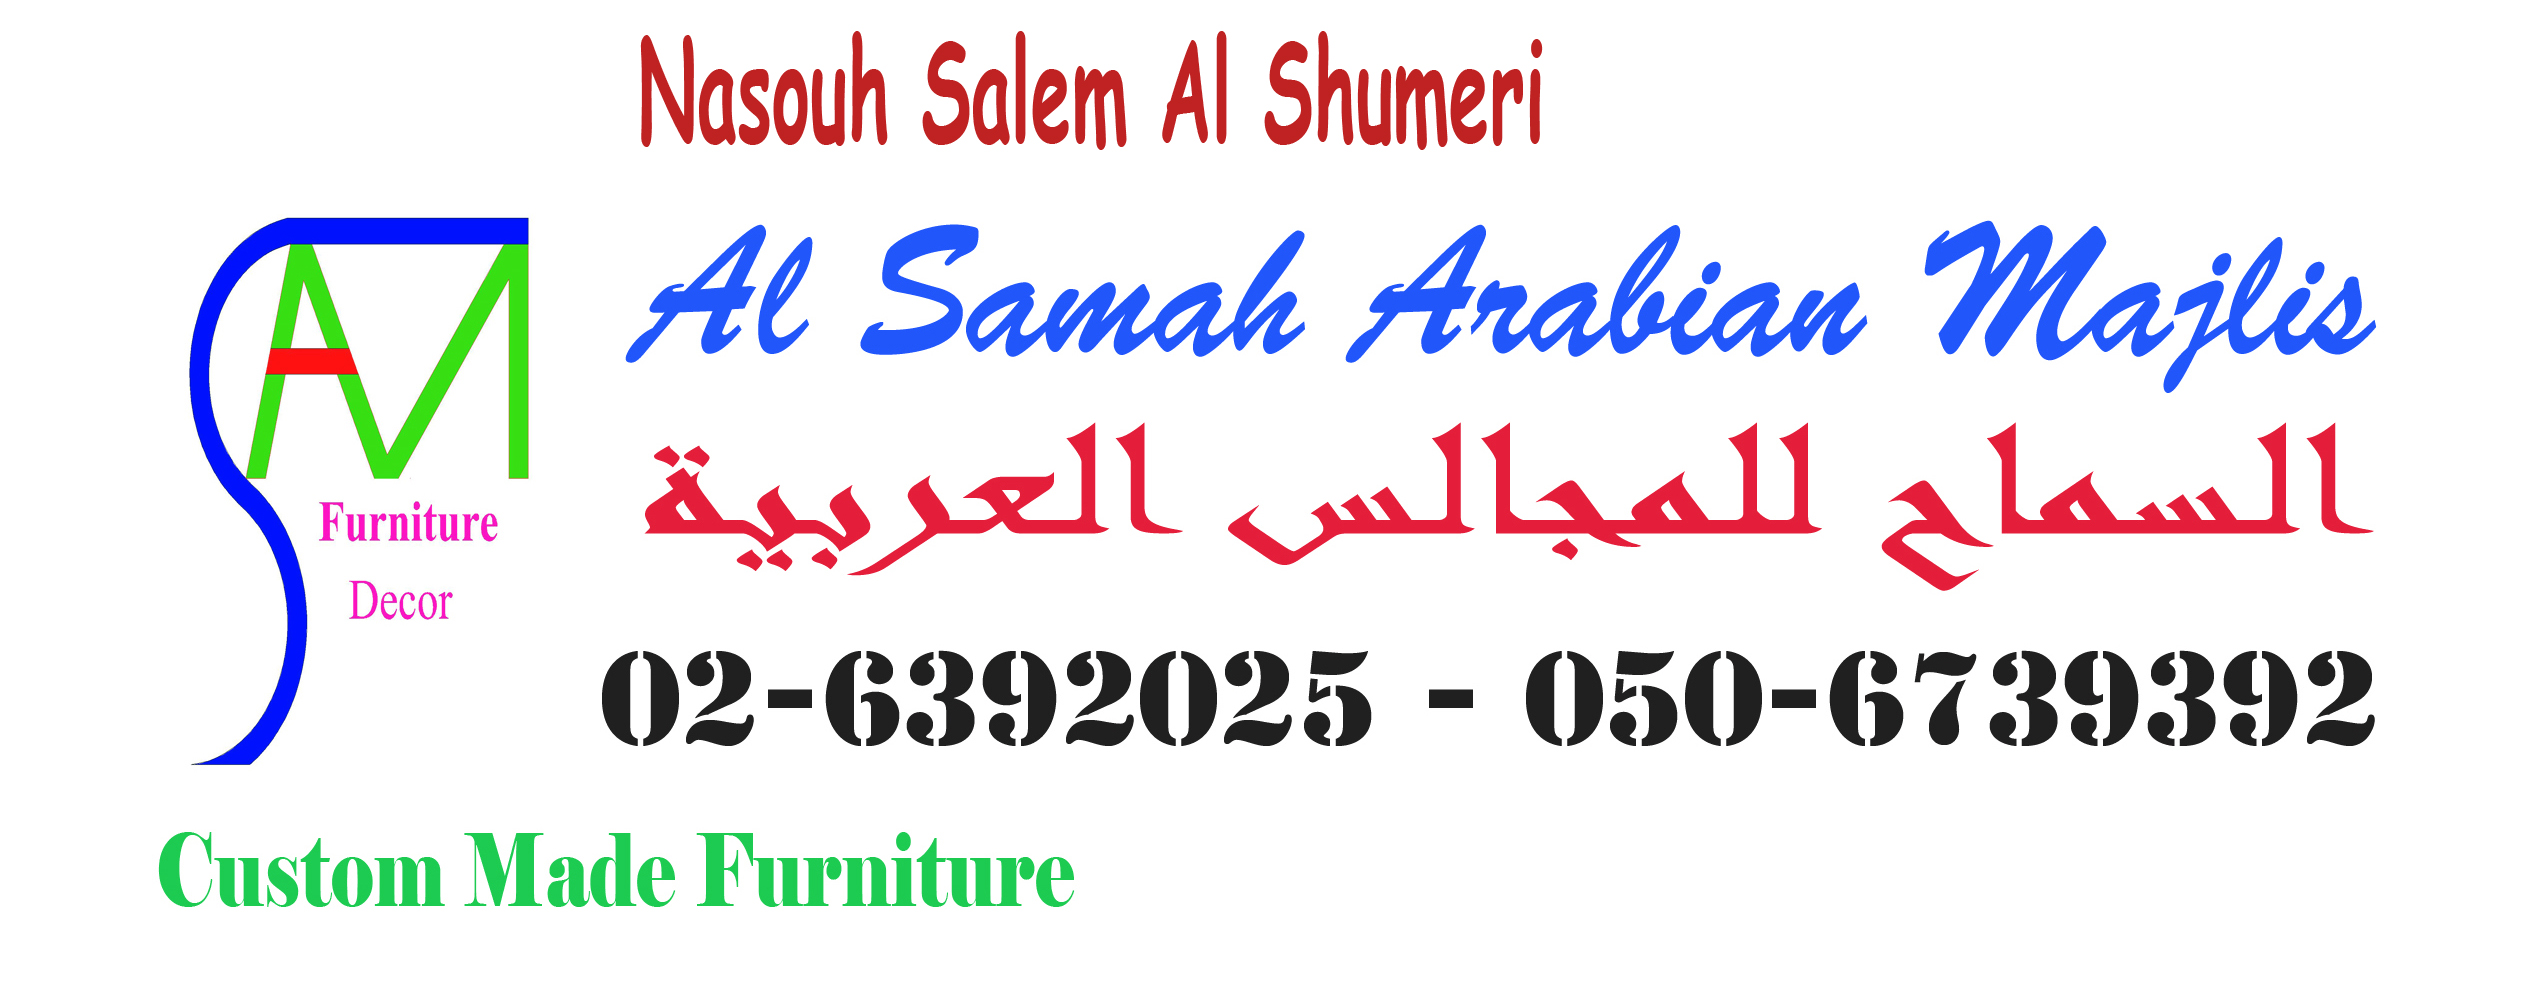 Al Samah Arabian Majlis Est. 